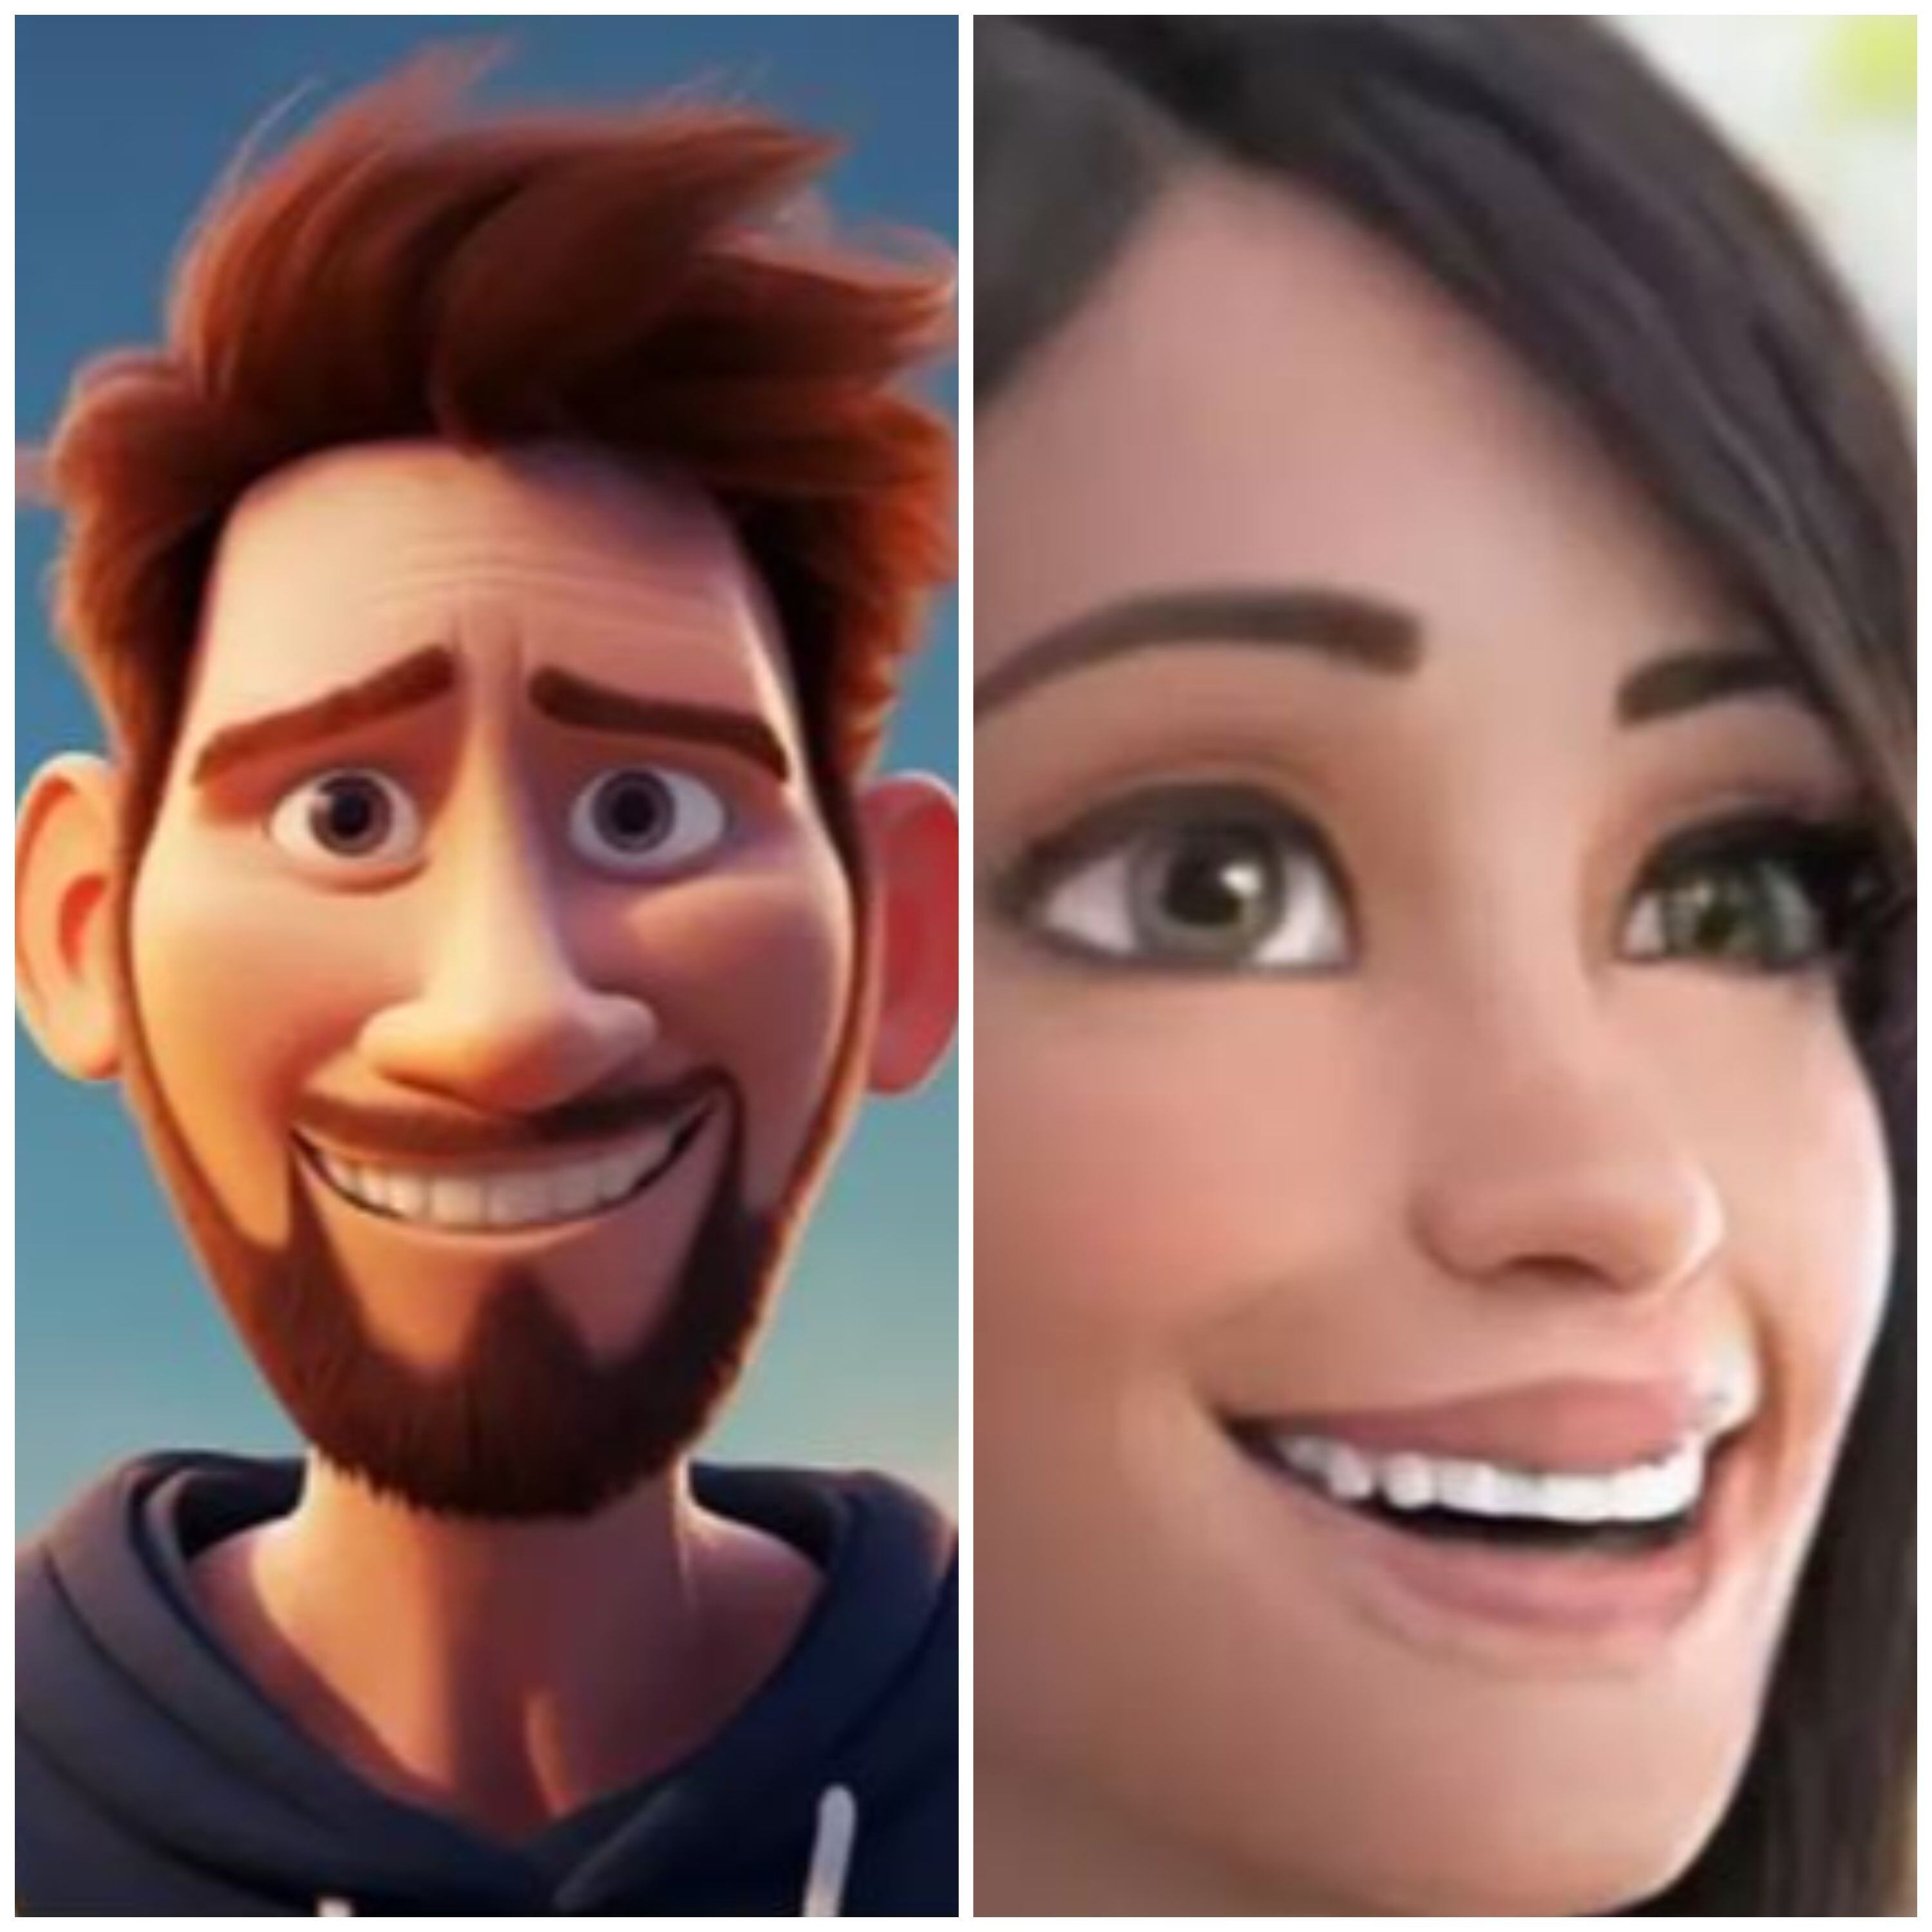 Los rostros de Lionel Messi y Antonela Roccuzzo como si fueran personajes de Pixar